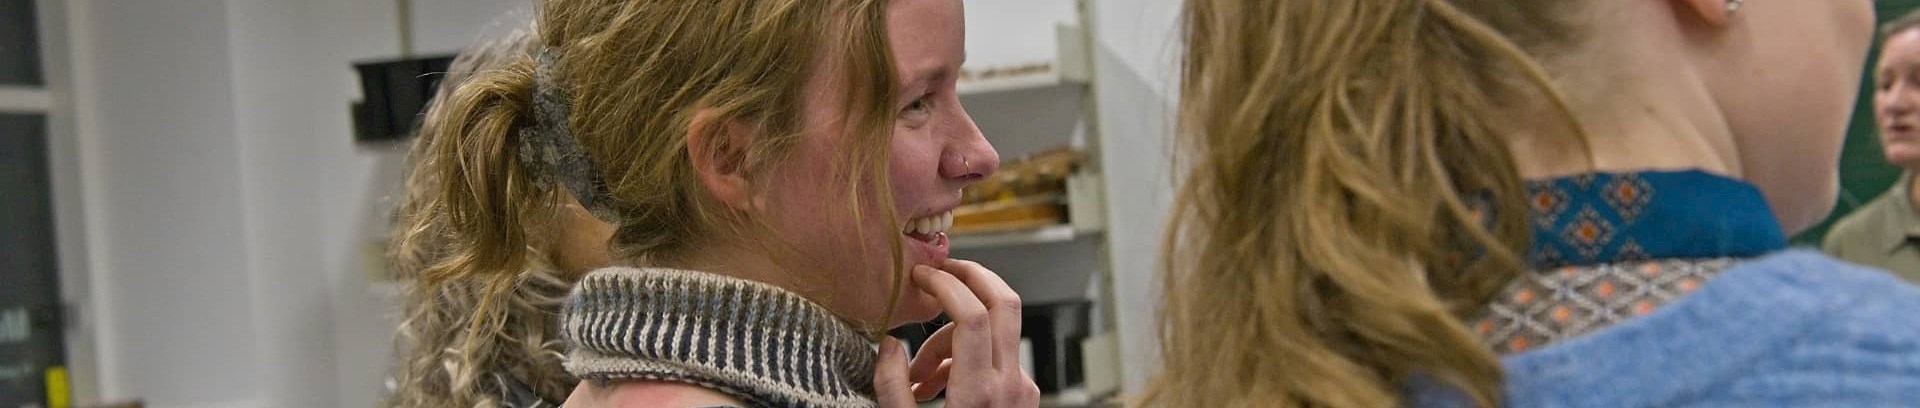 Kvinde griner til sommersang for begyndere i FOF Aarhus